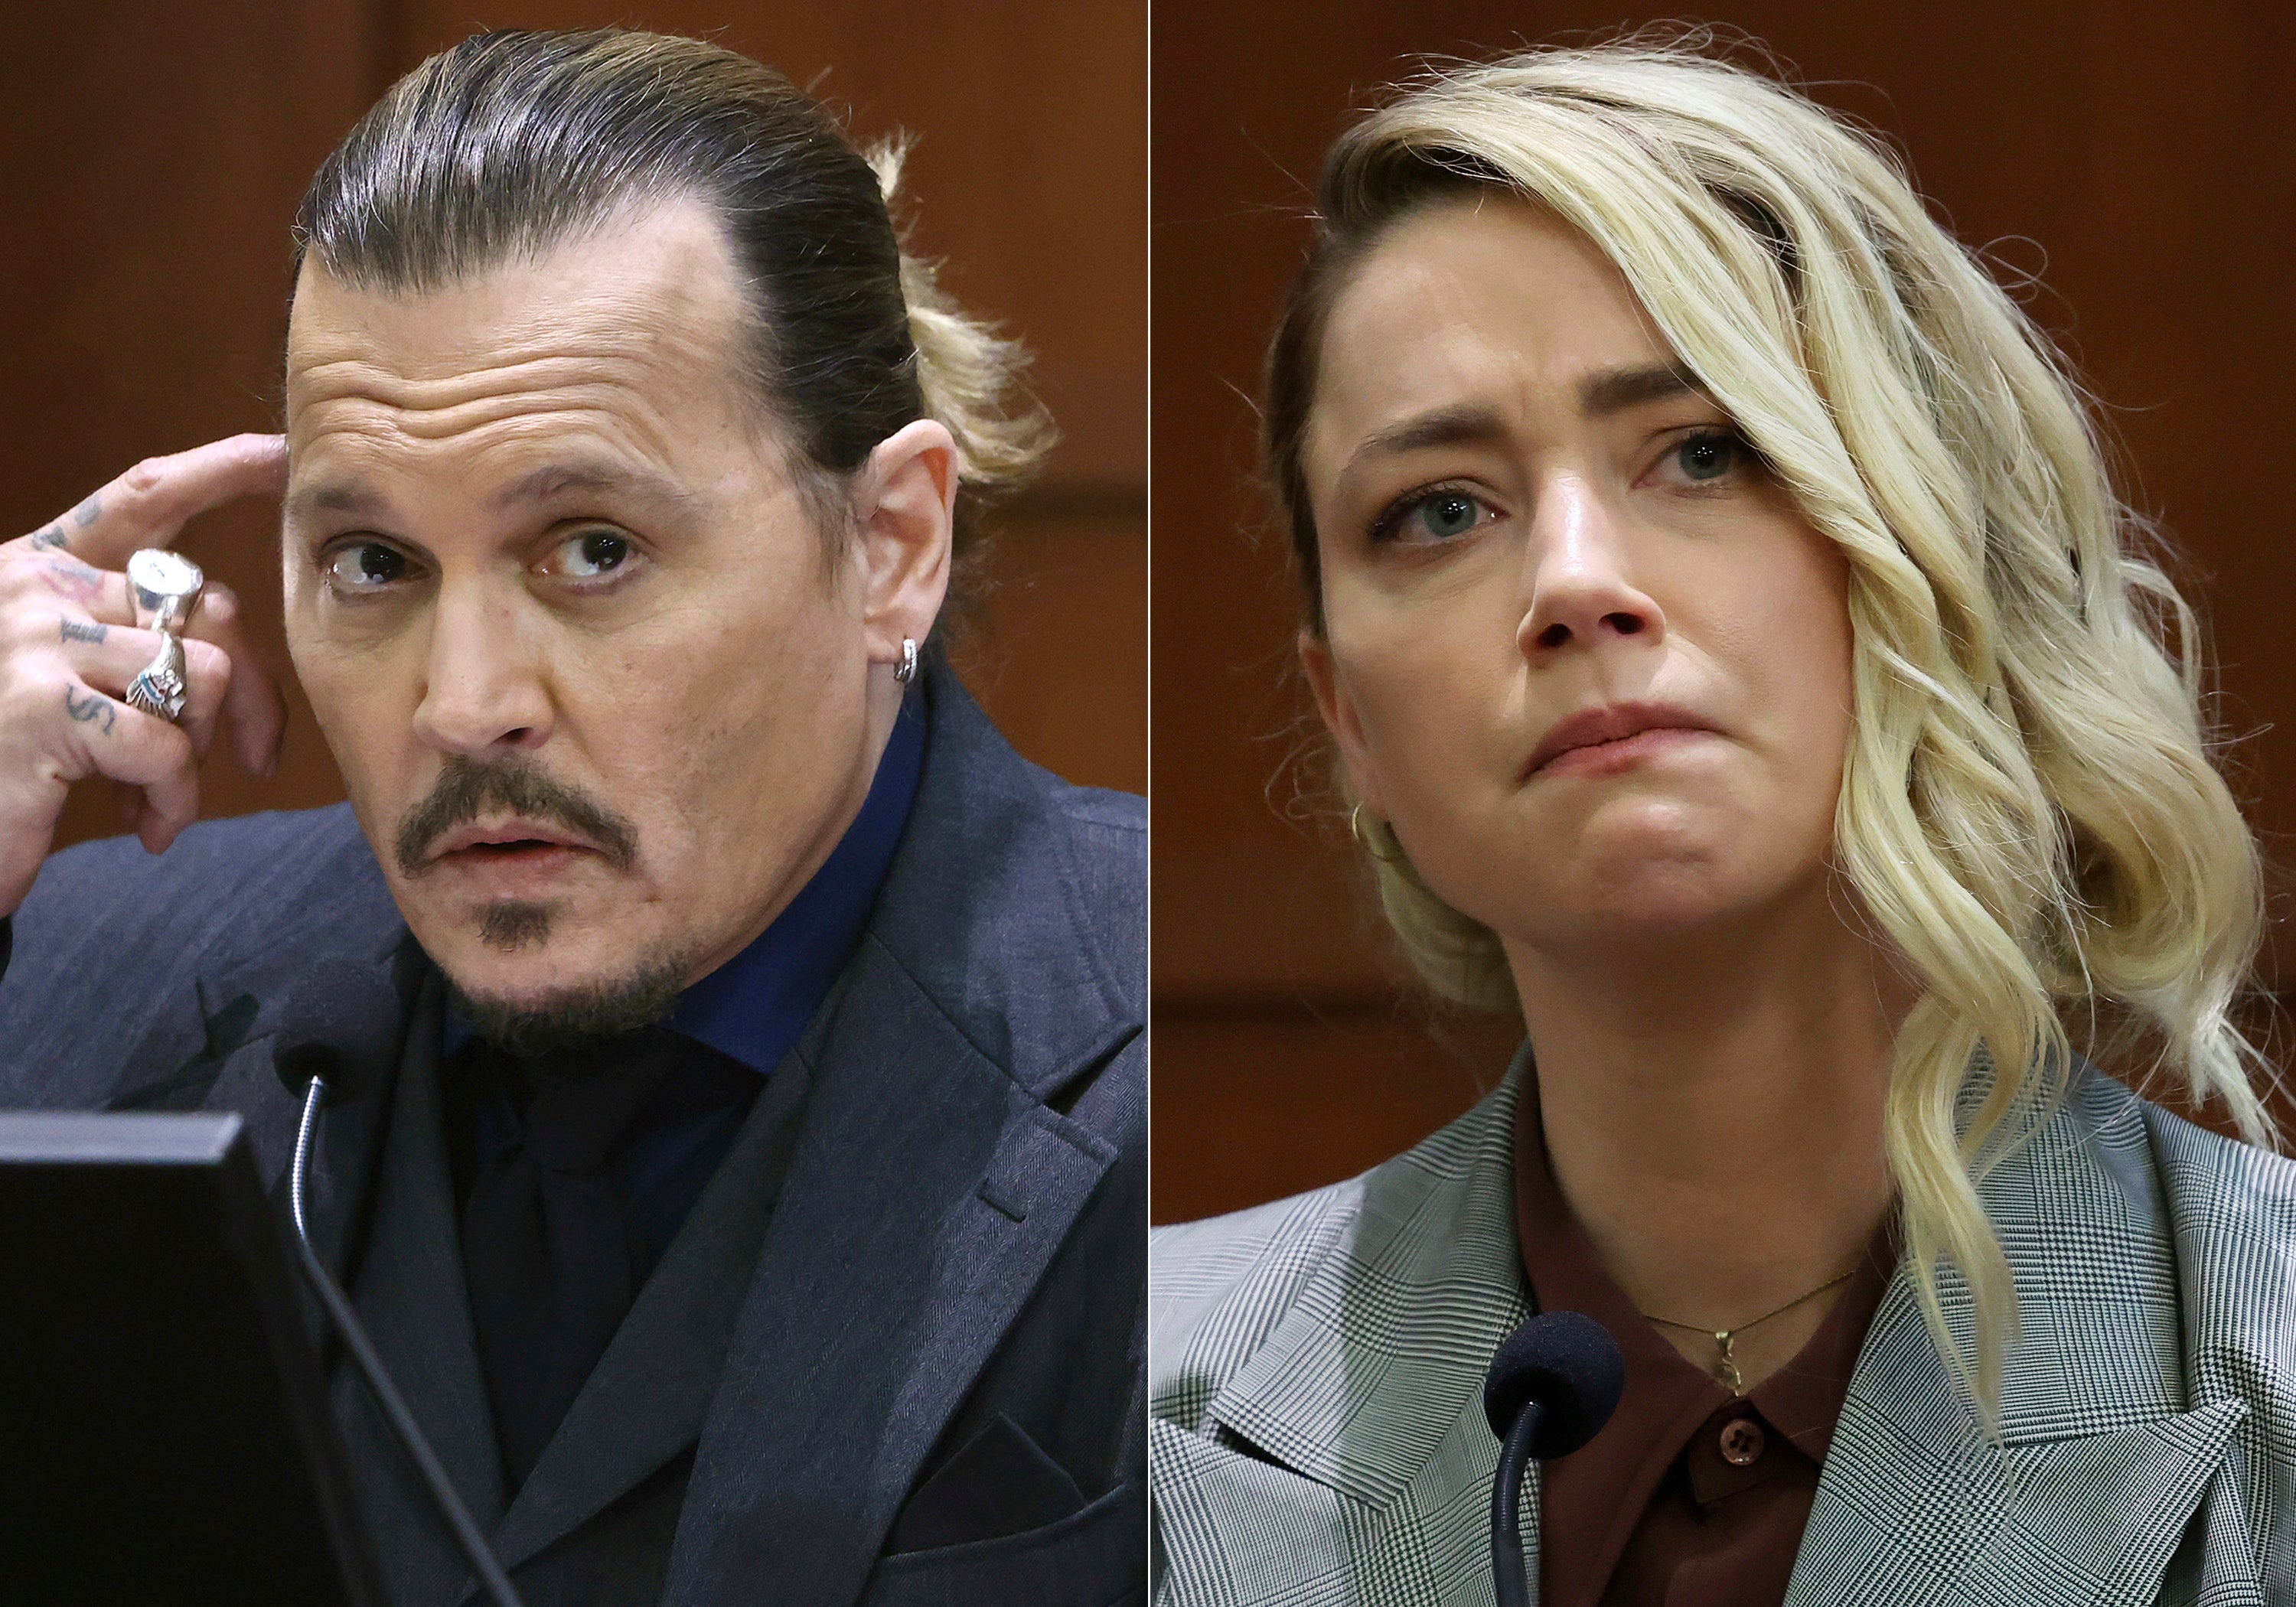 El juicio entre Depp y Heard duró dos meses